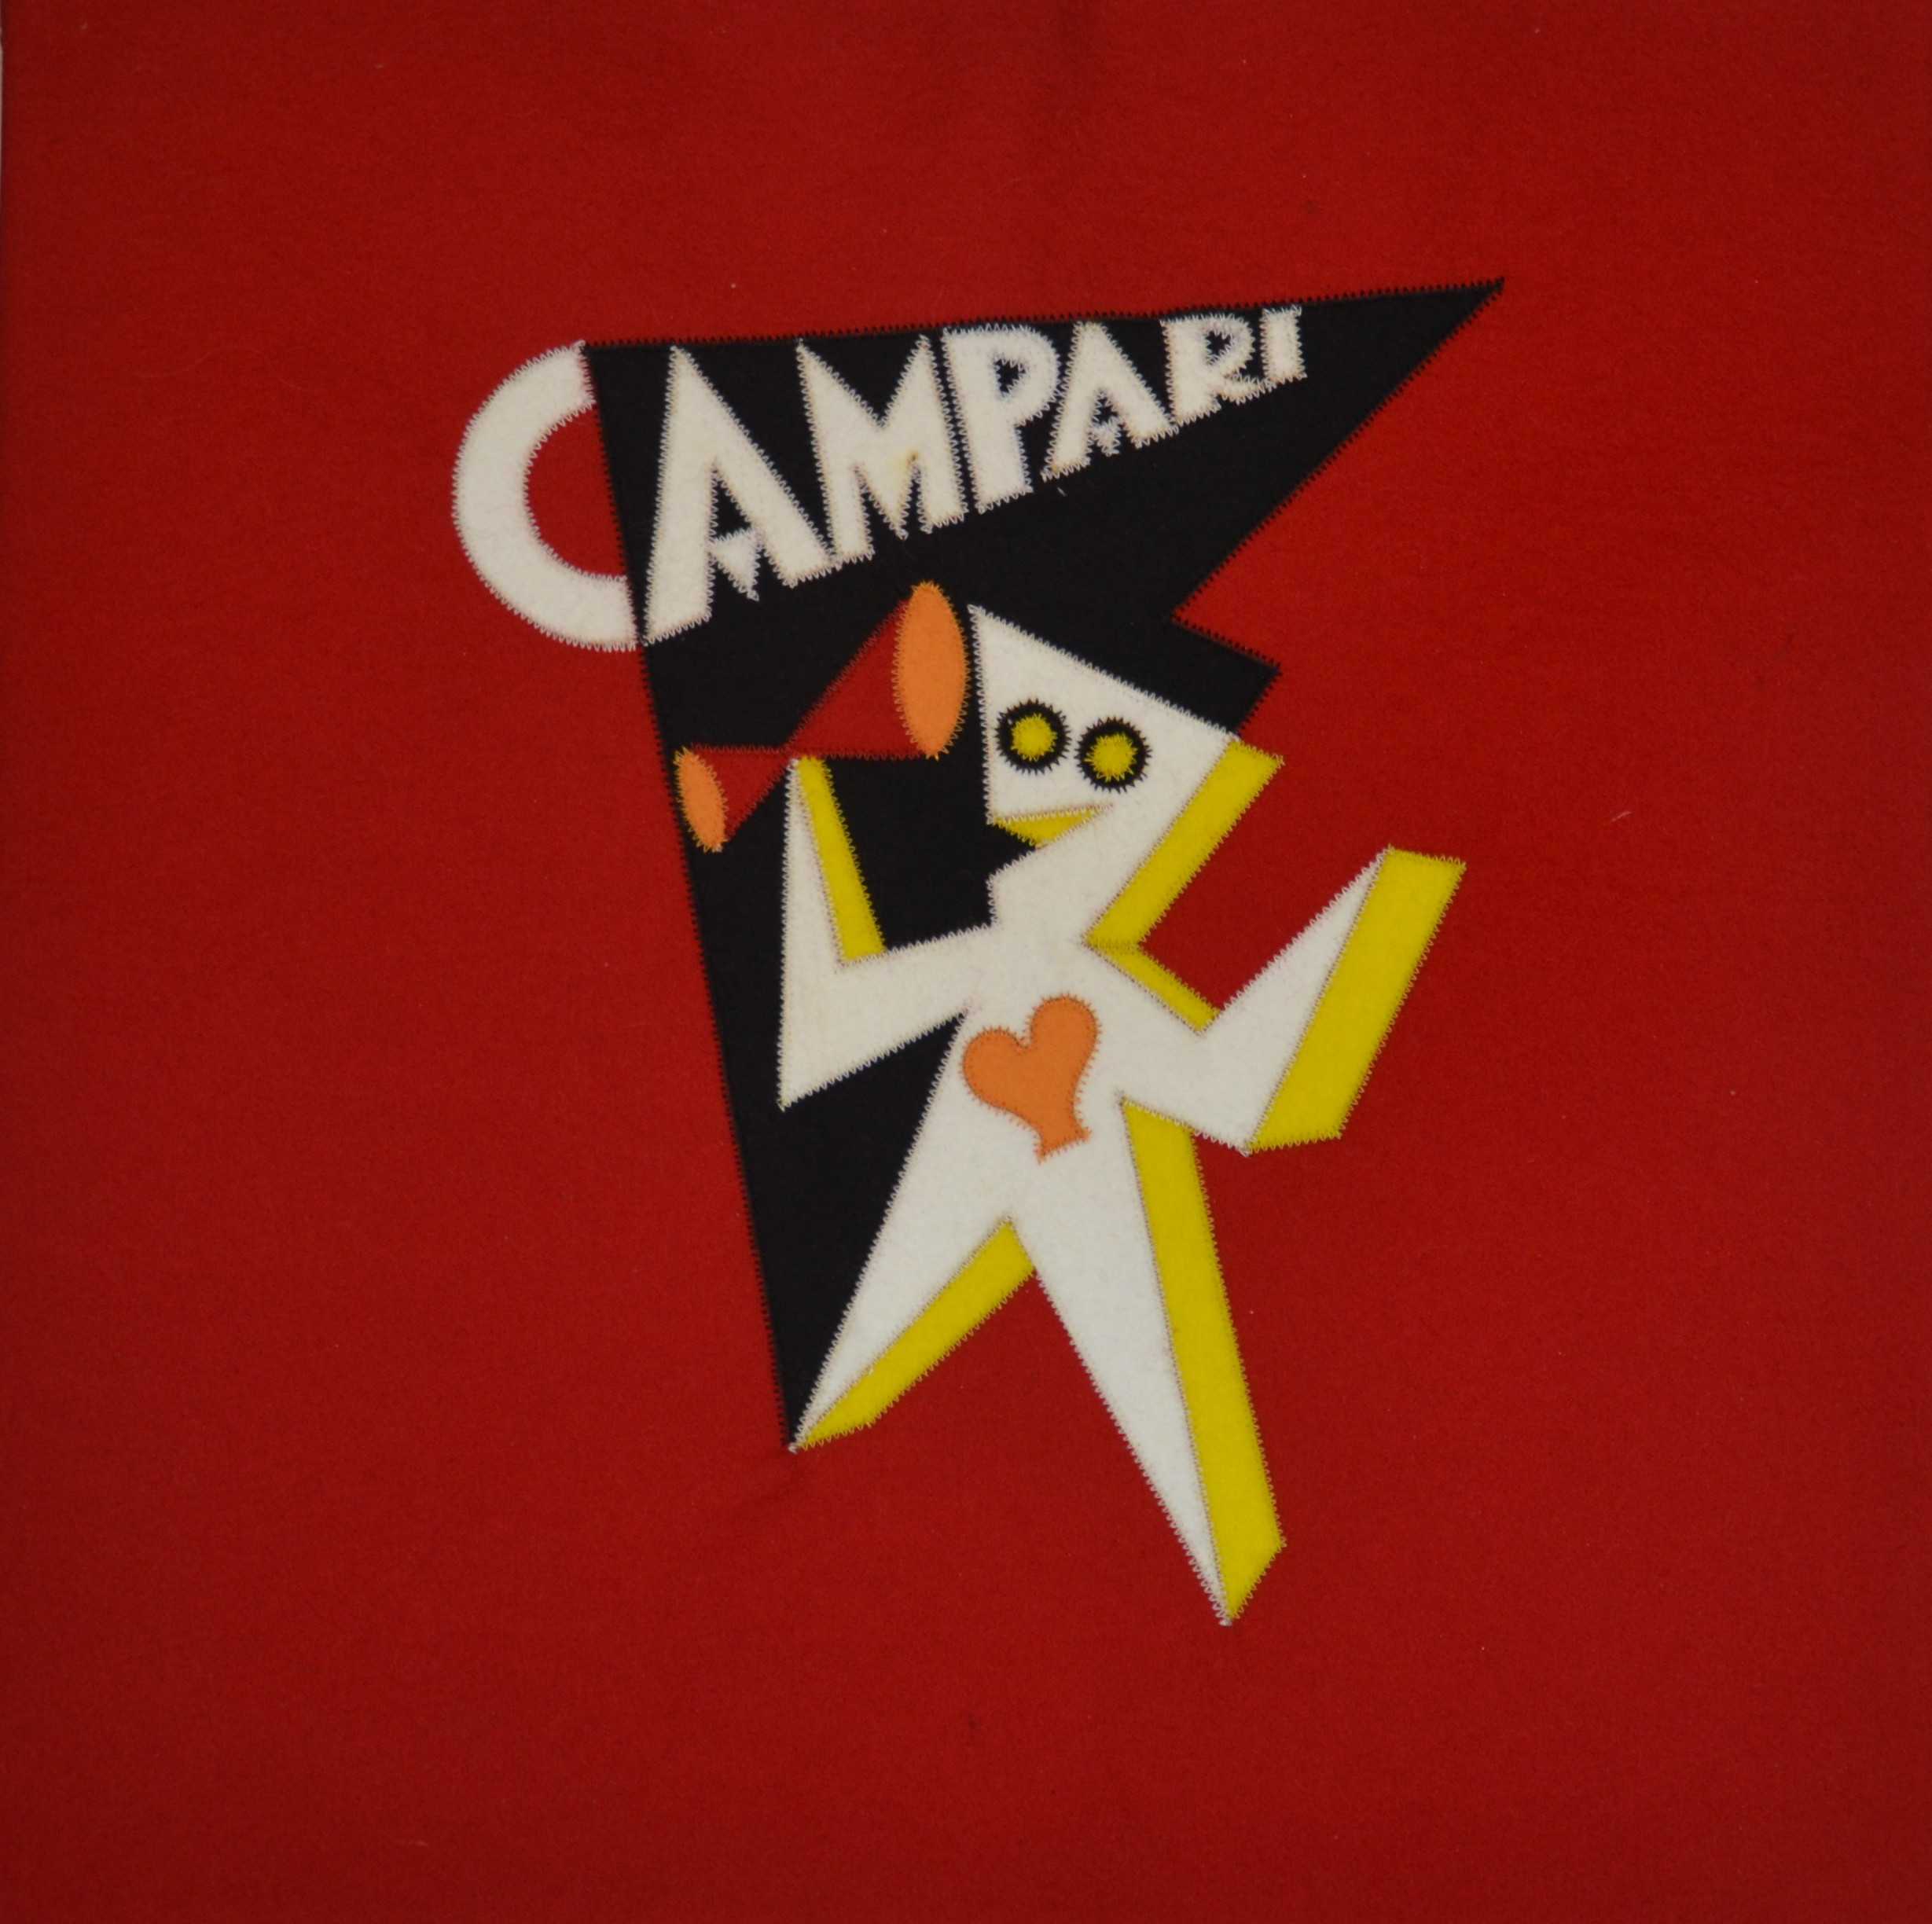 Omino Campari T23015